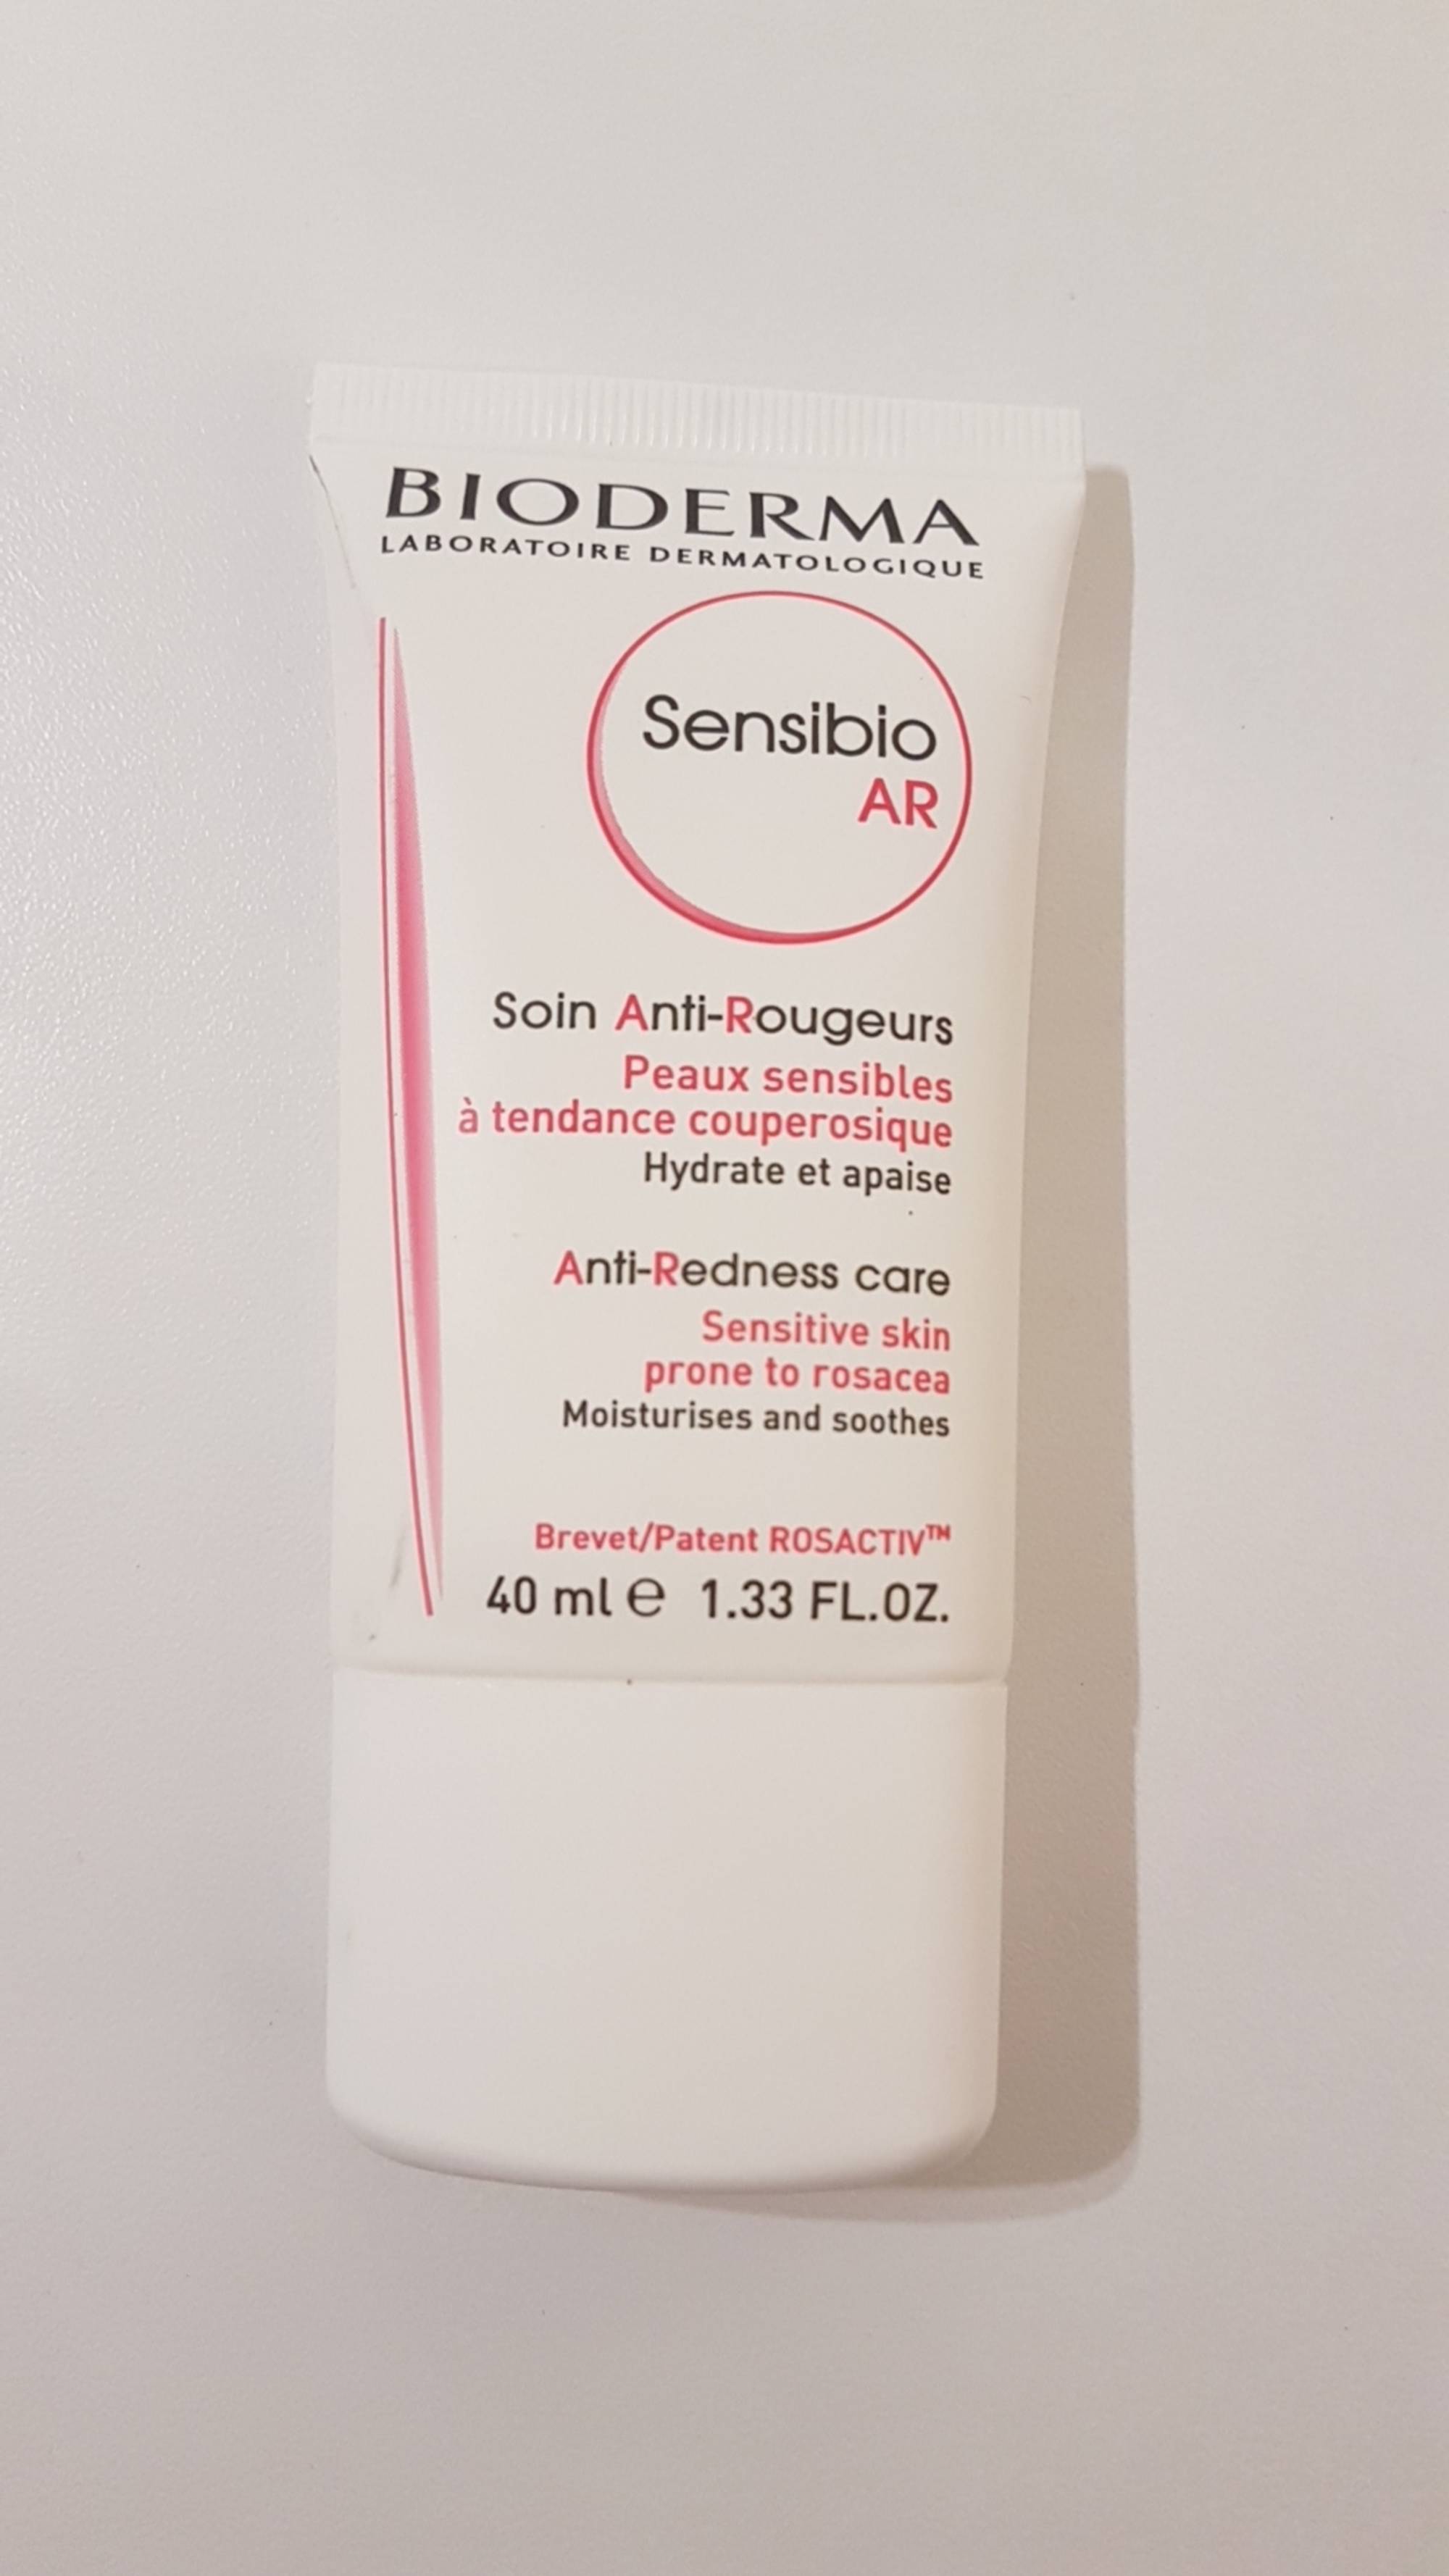 BIODERMA - Sensibio AR - Soin anti-rougeurs